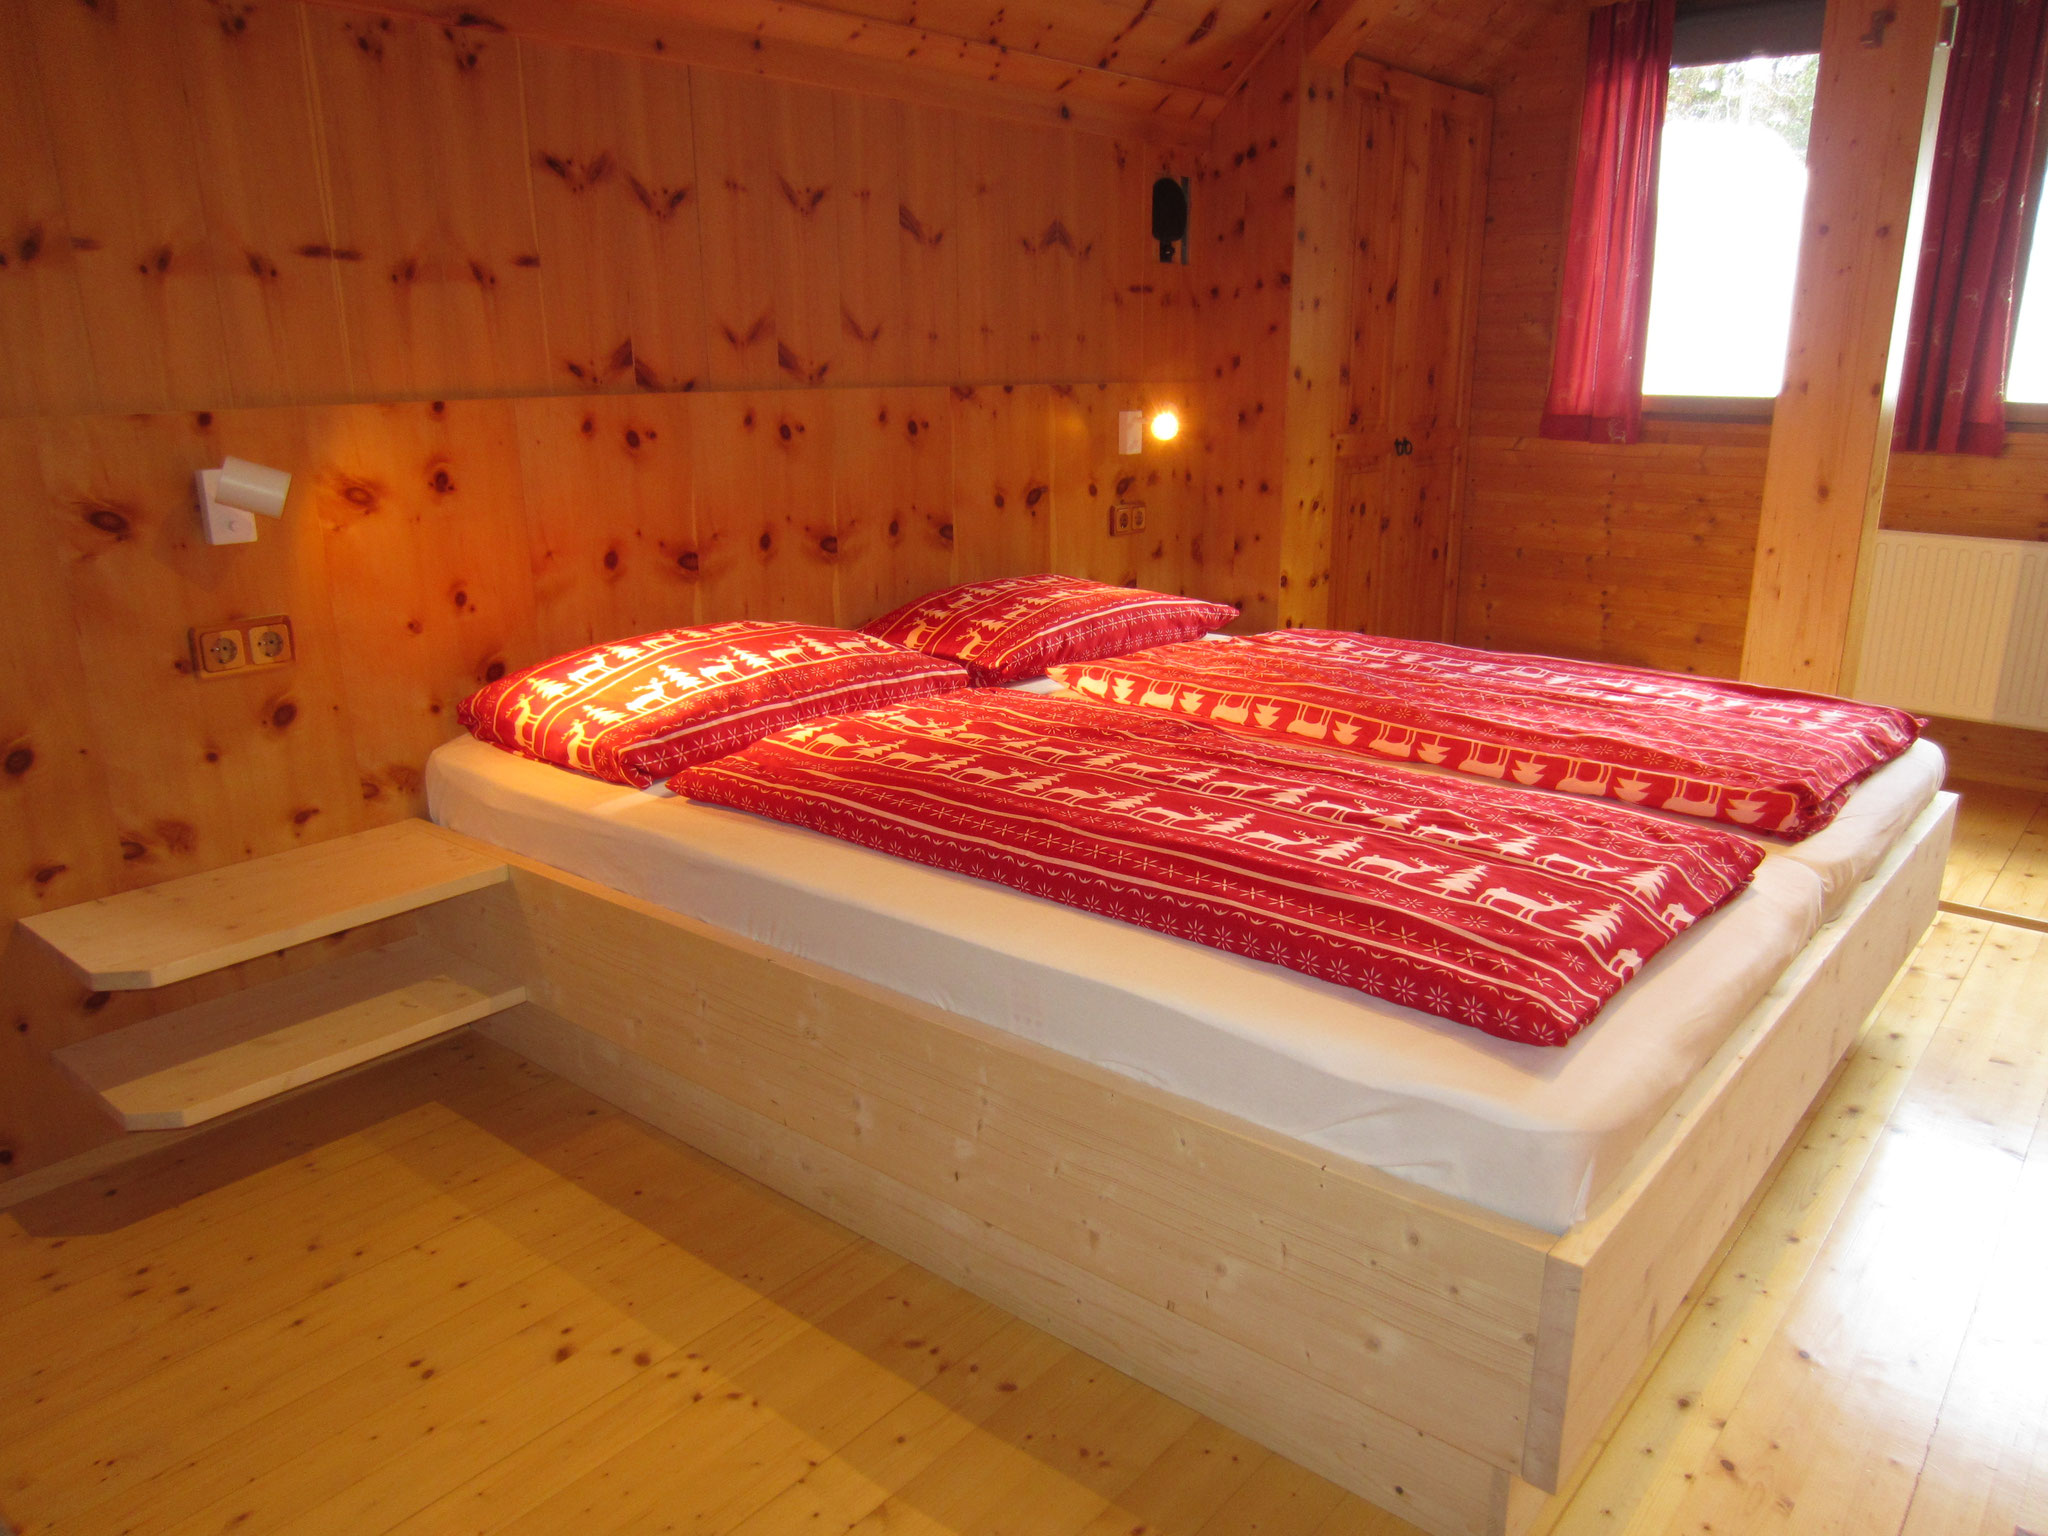 Zirbenwald Lodge - Schlafzimmer "Zirbe"